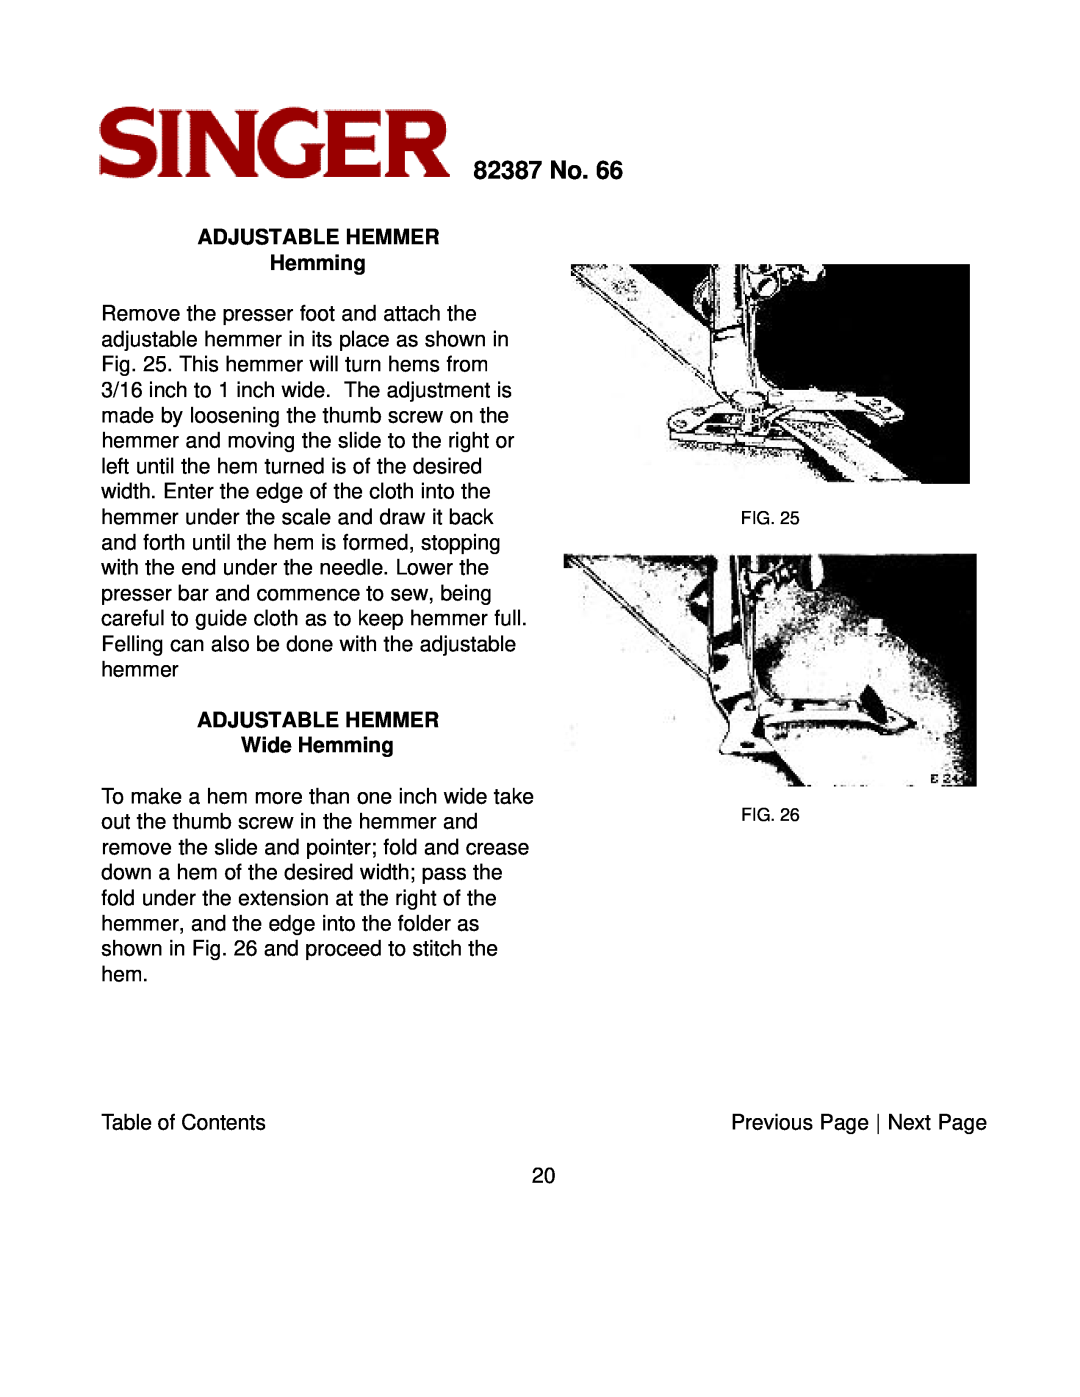 Singer instruction manual ADJUSTABLE HEMMER Hemming, ADJUSTABLE HEMMER Wide Hemming, 82387 No 